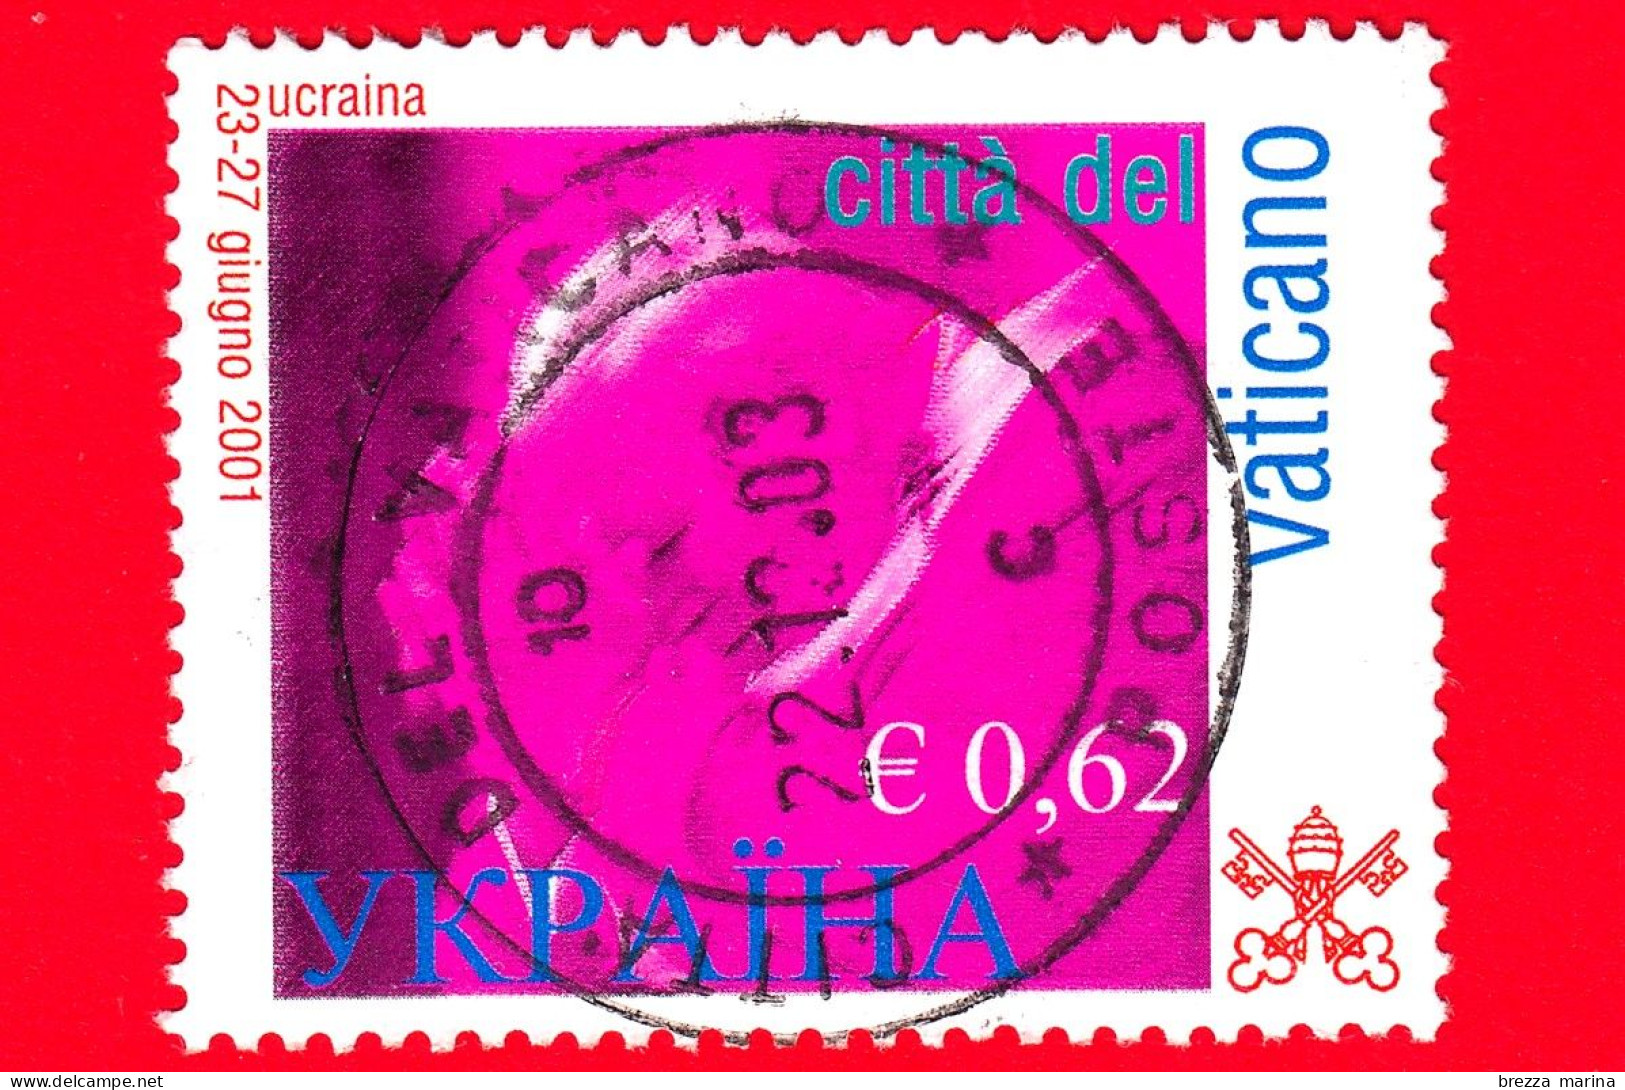 VATICANO  - Usato - 2002 - Viaggi Di Giovanni Paolo II Nel 2001 - Ucraina - 0,62 - Usati